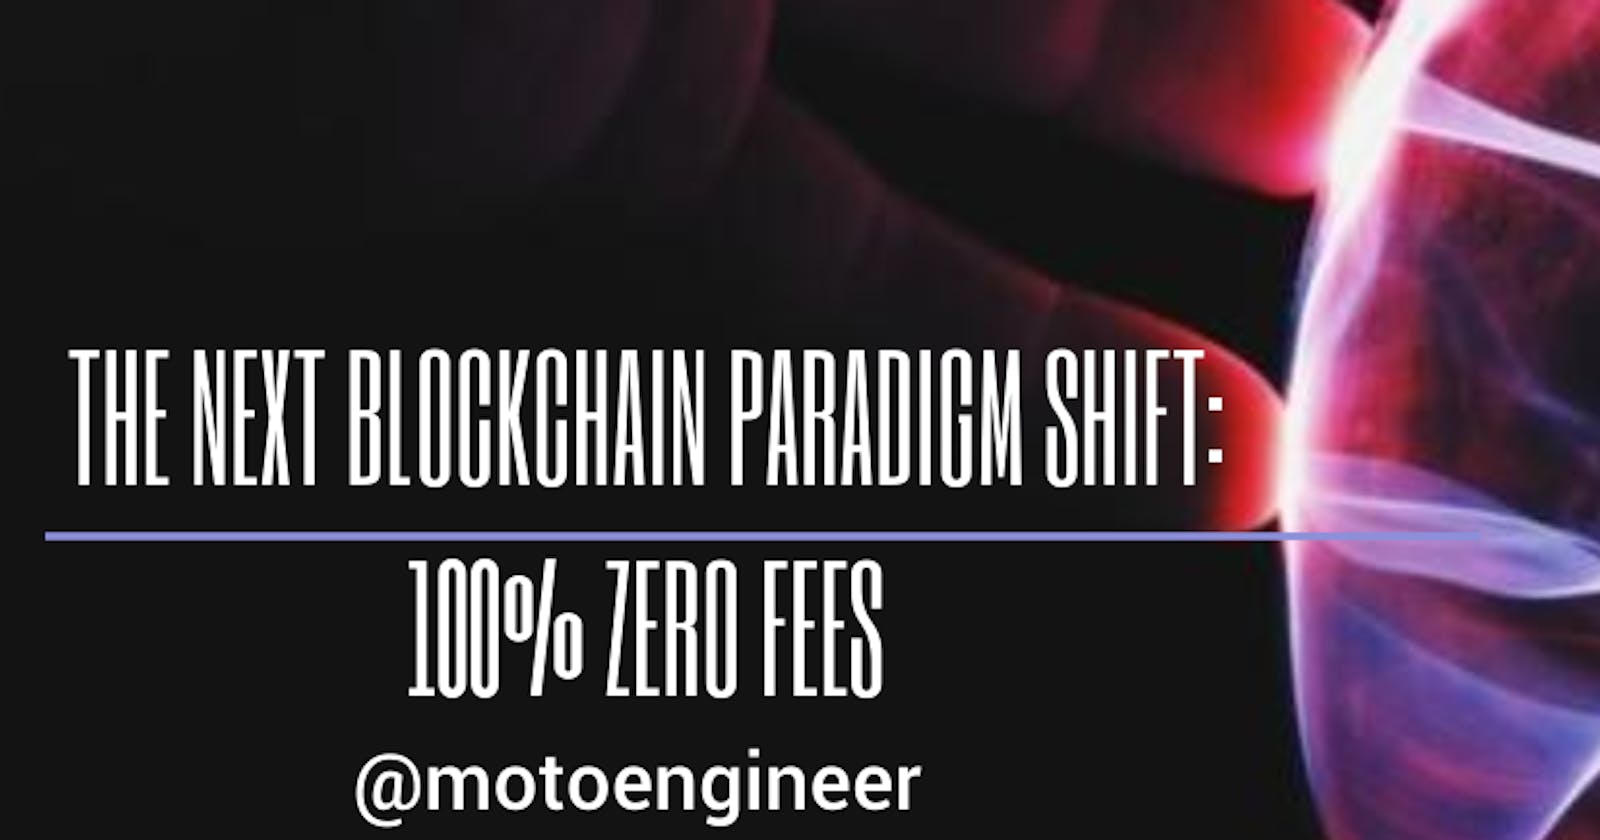 The Next Blockchain Paradigm Shift: 100% Zero Fees